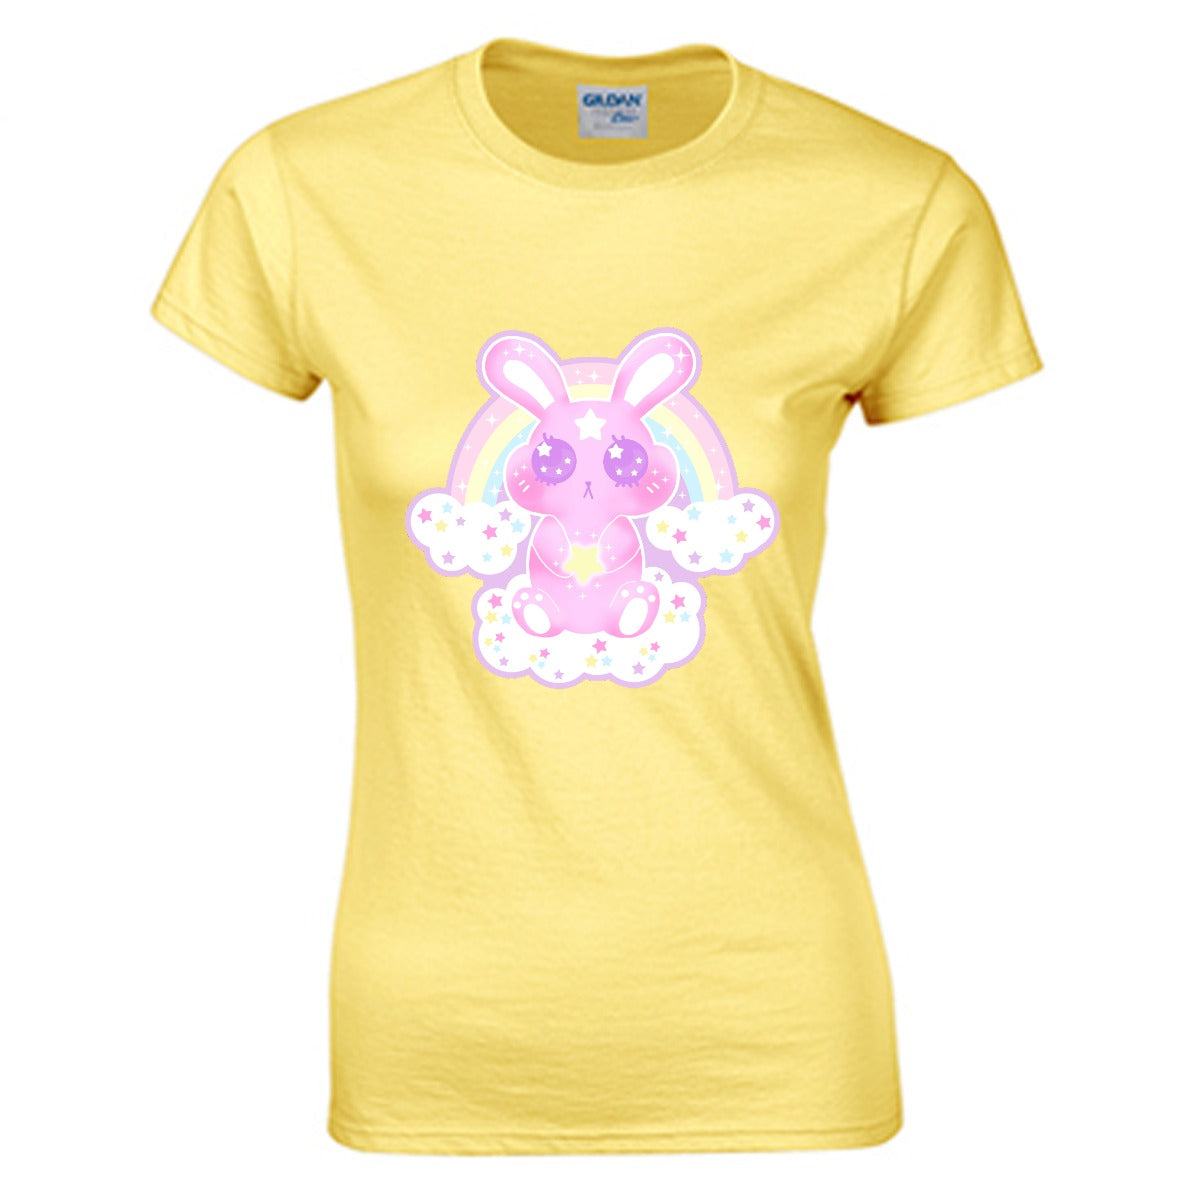 Wishing Bunny Women's Cotton T-shirt